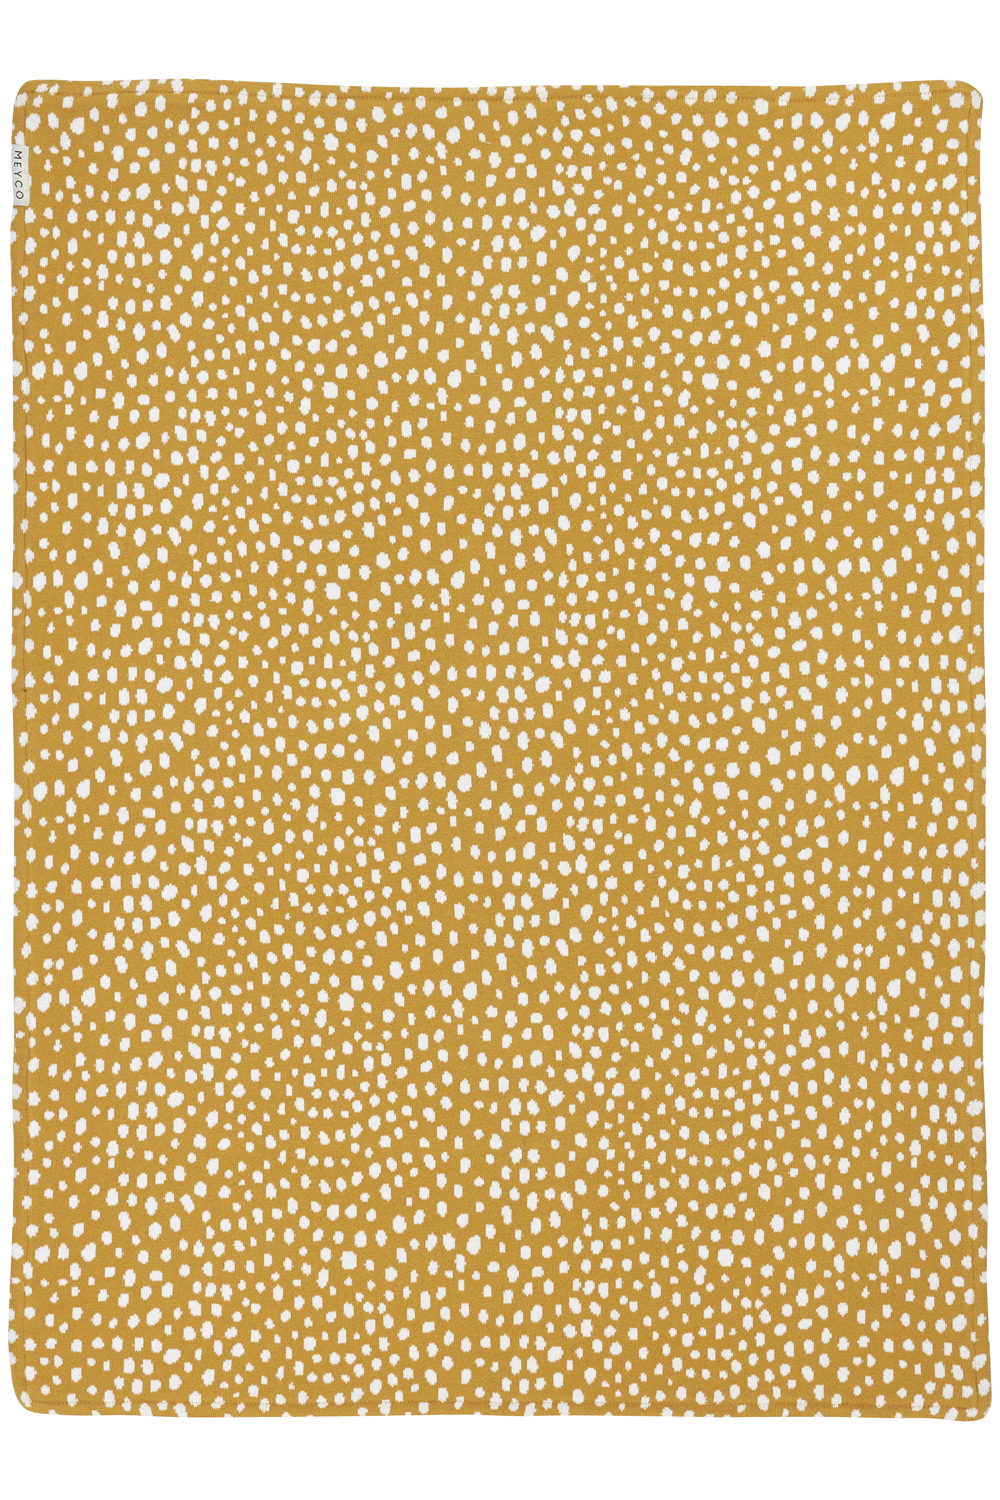 Wiegdeken Cheetah velvet - honey gold - 75x100cm